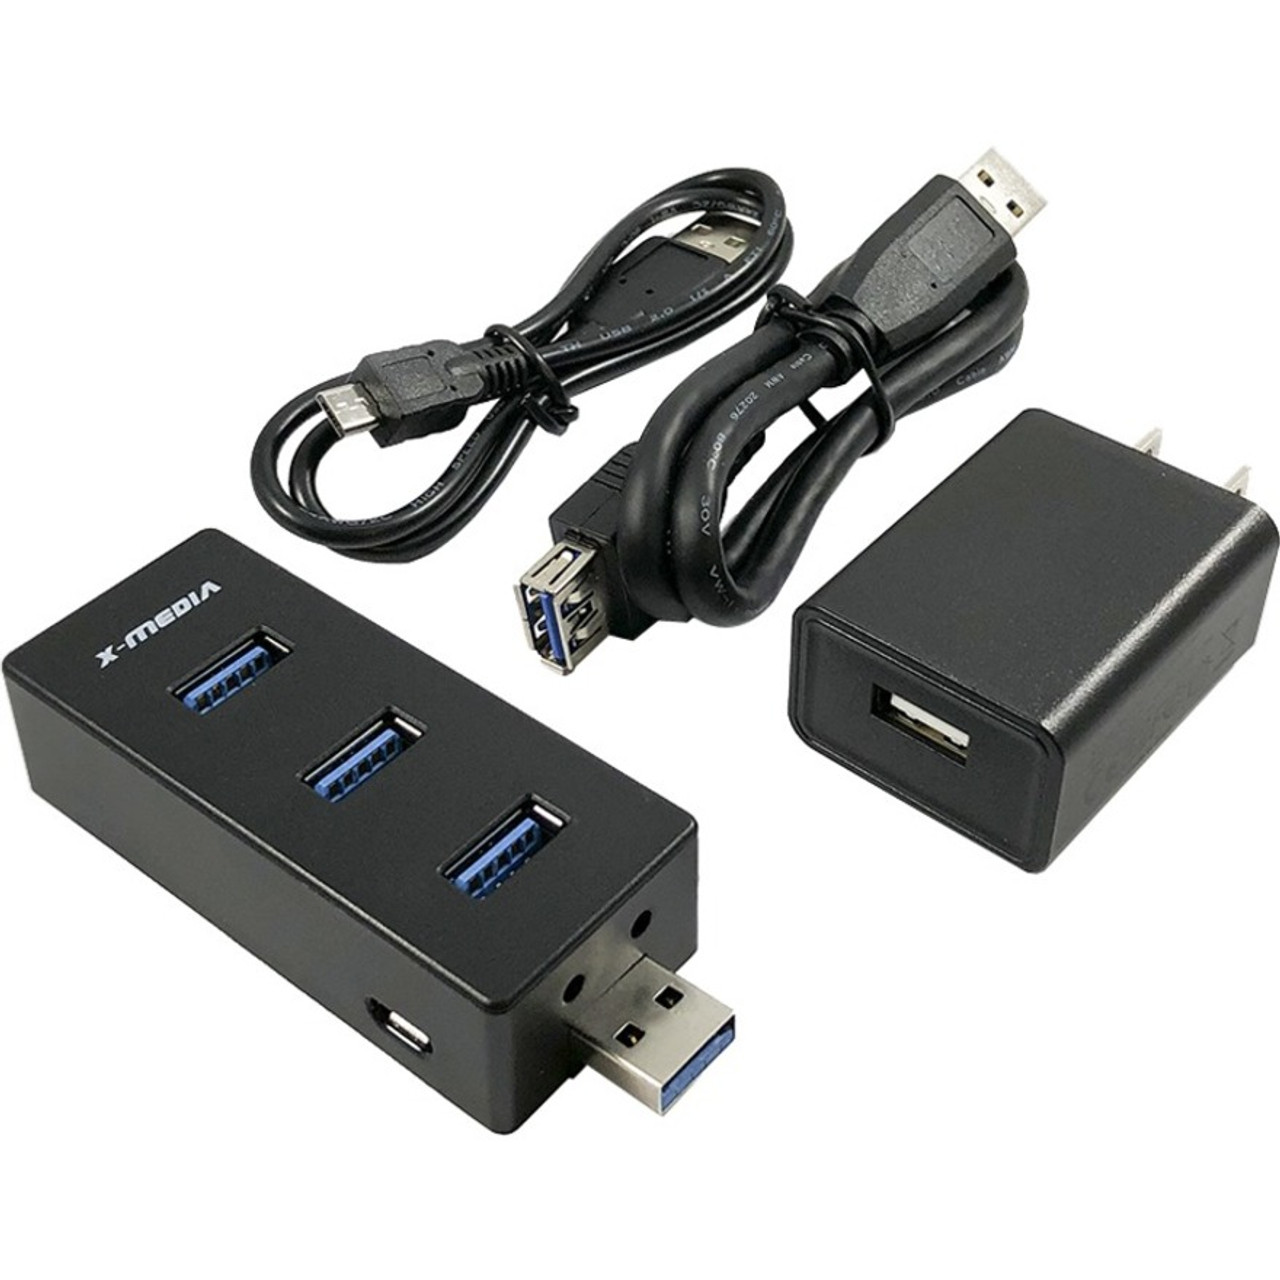 Premiertek MX-UH3004A USB Hub - XM-UH3004A